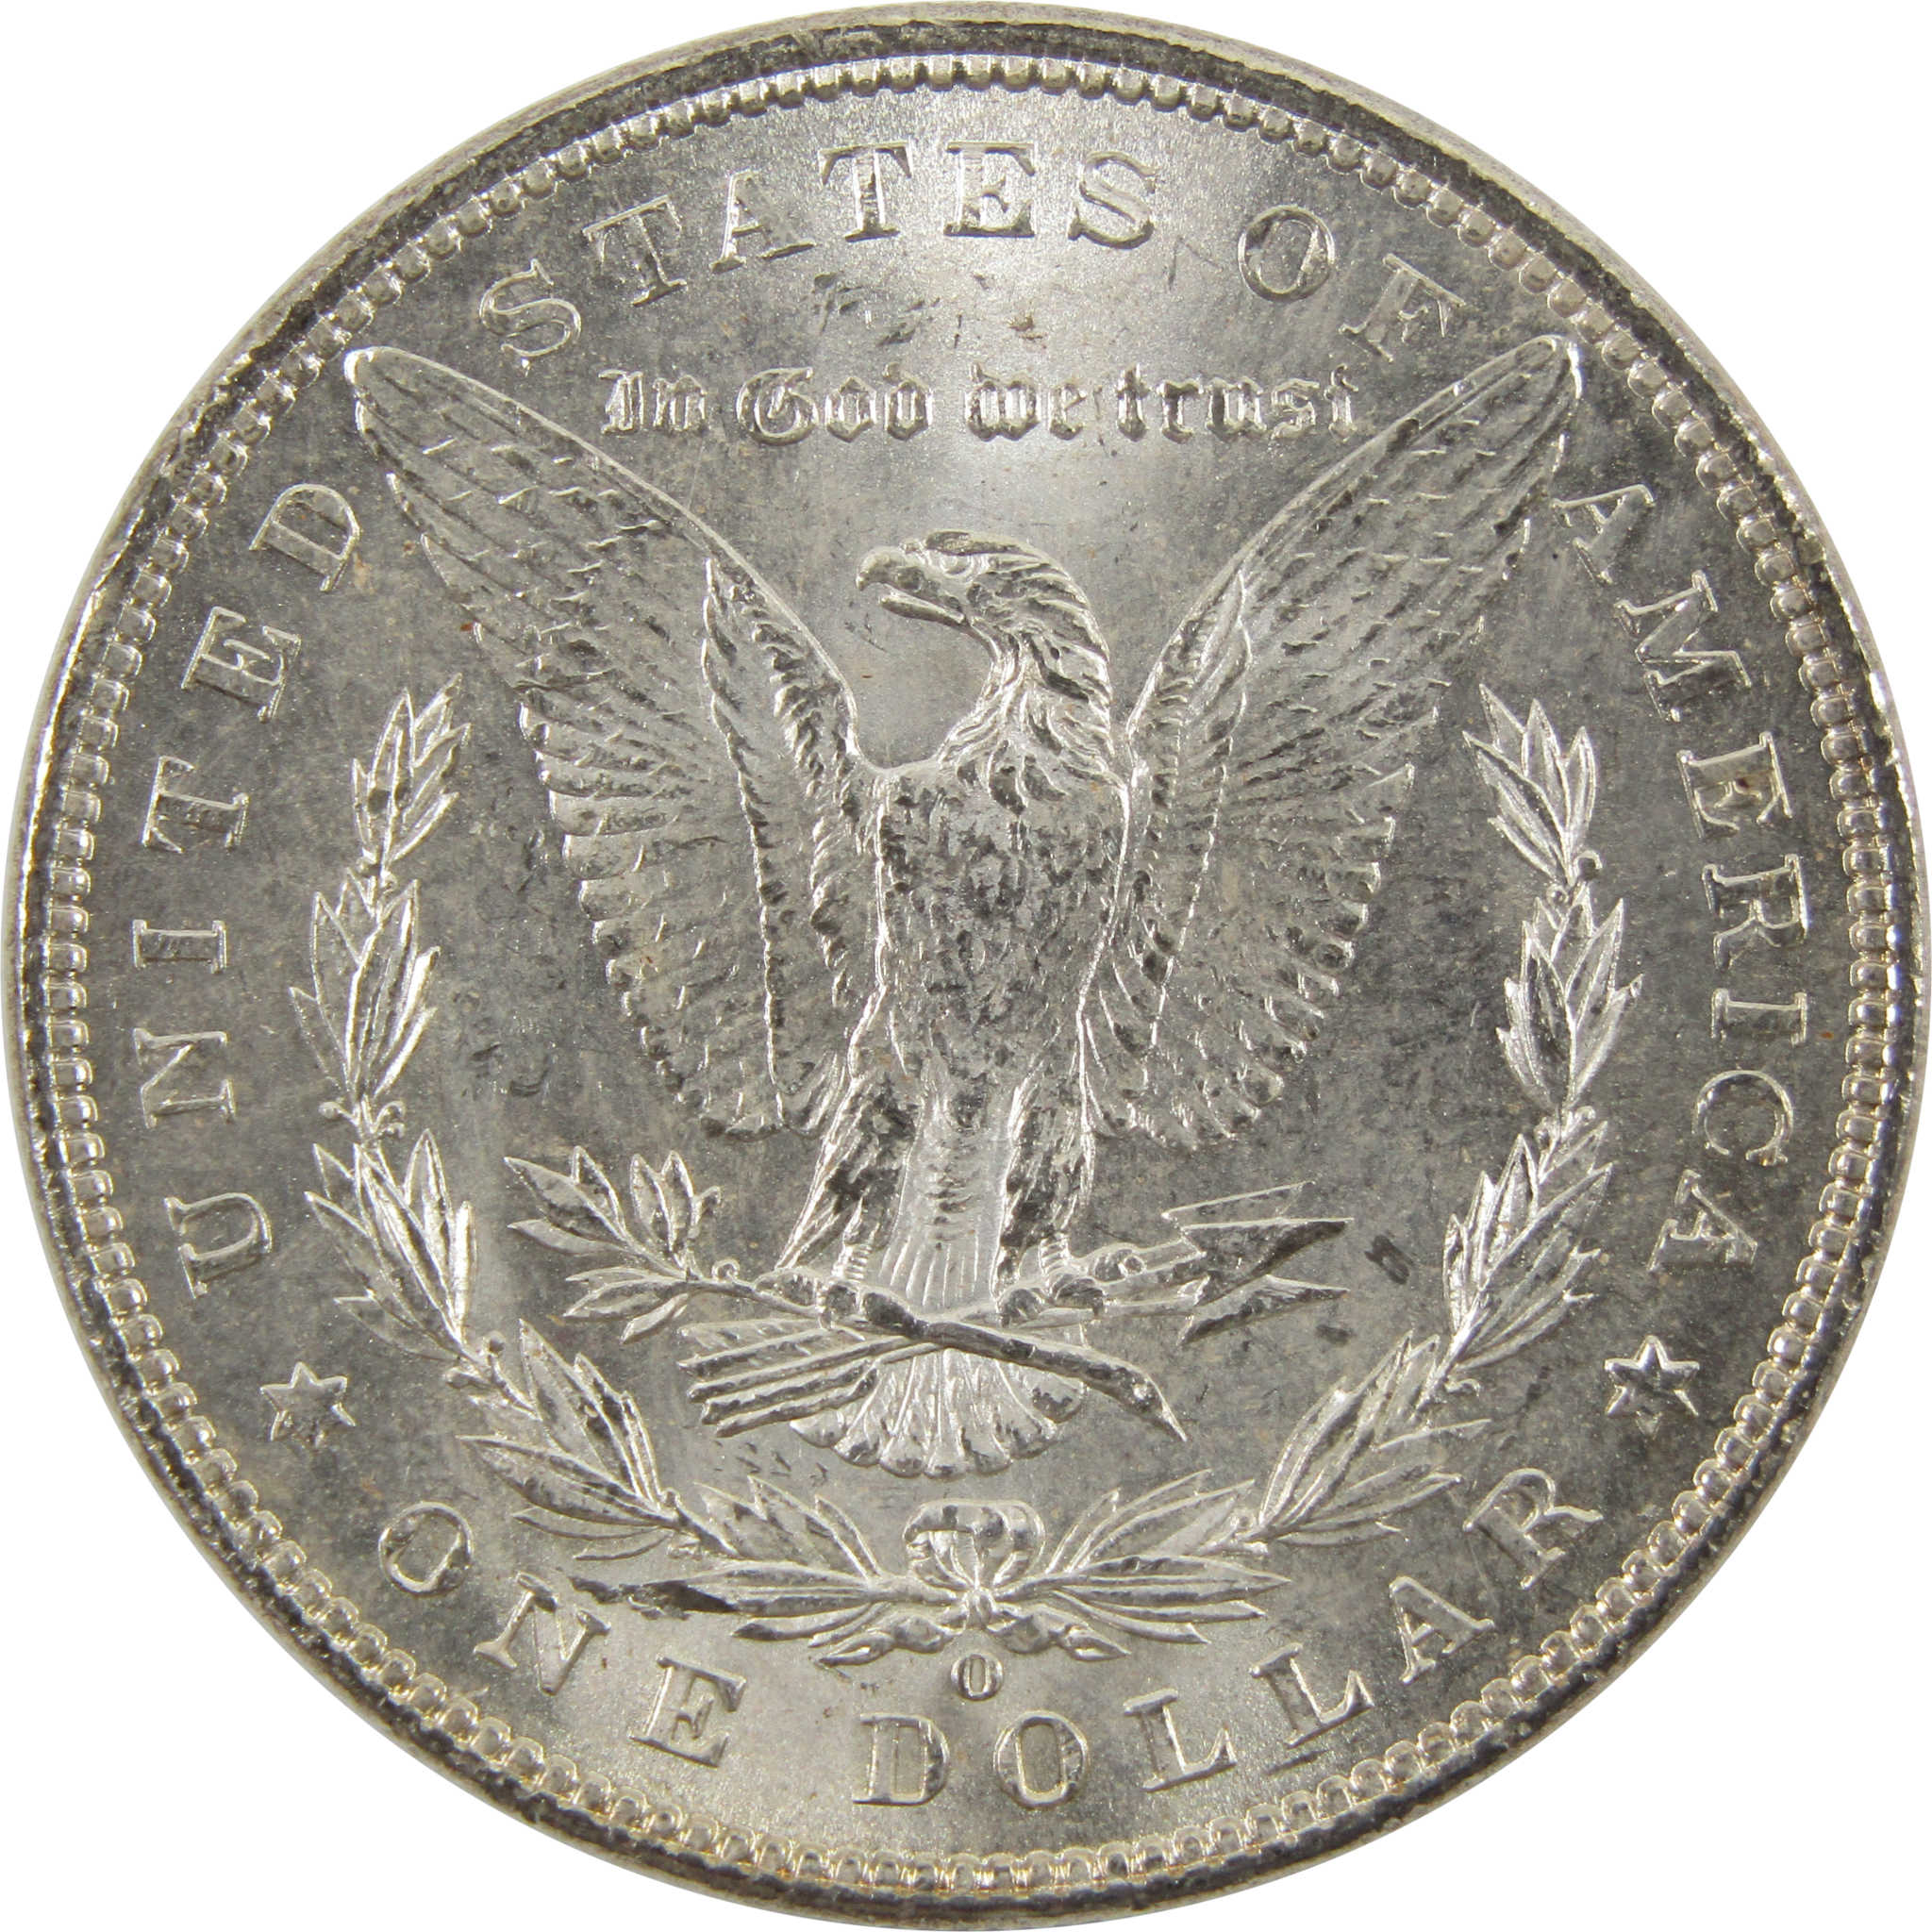 1901 O Morgan Dollar BU Uncirculated 90% Silver $1 Coin SKU:I10473 - Morgan coin - Morgan silver dollar - Morgan silver dollar for sale - Profile Coins &amp; Collectibles